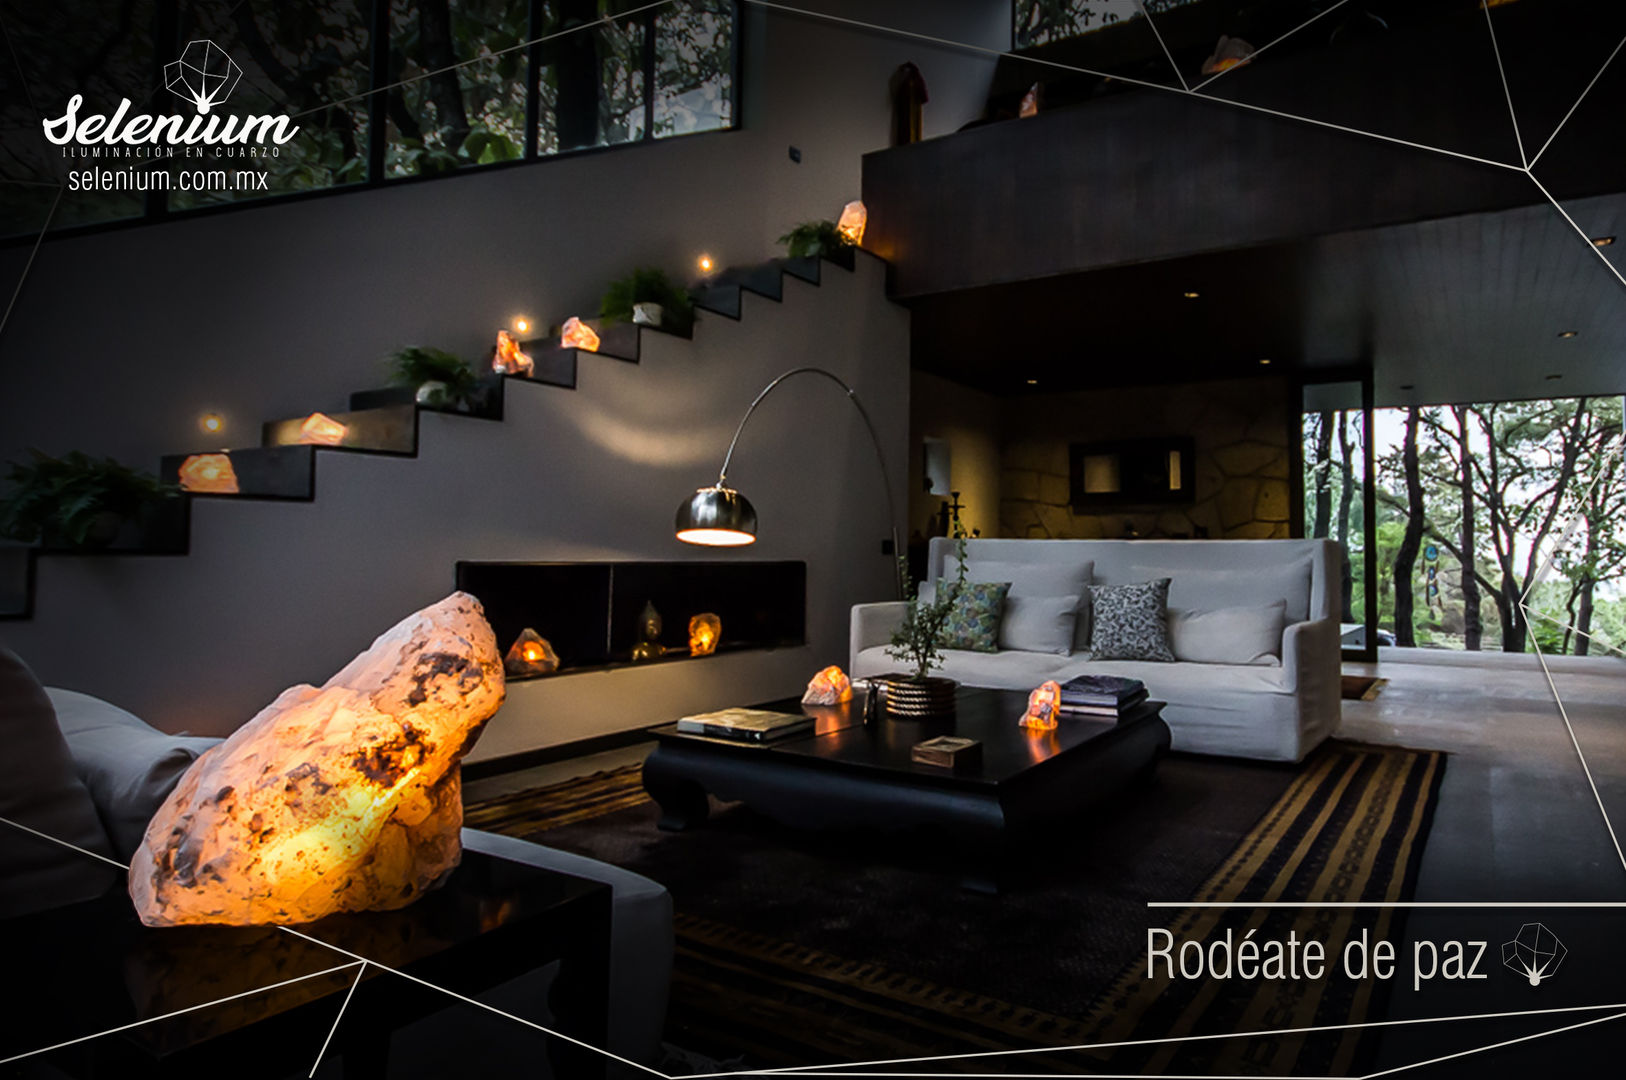 Armoniza tu espacio con Selenium, Selenium lámparas de cuarzo Selenium lámparas de cuarzo Living room Quartz Accessories & decoration